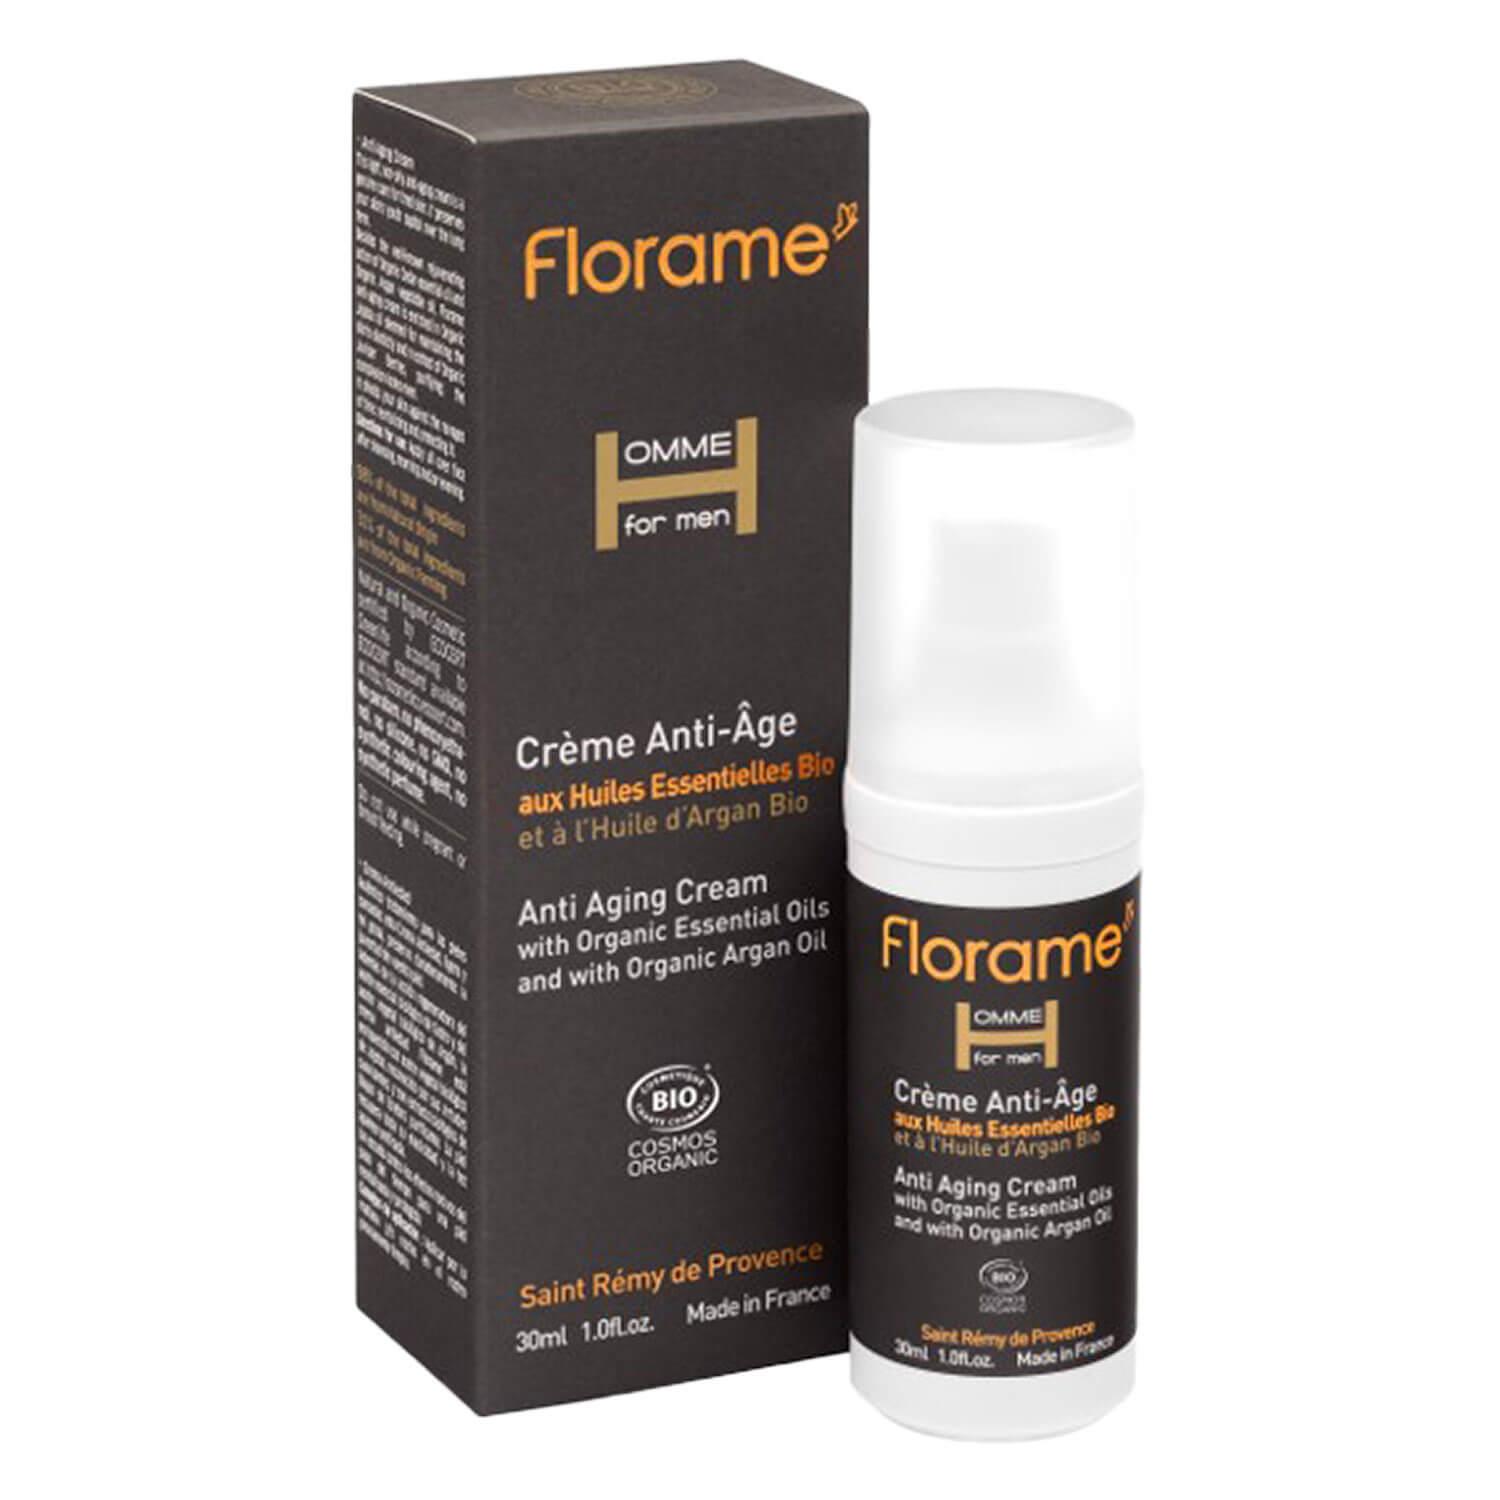 Florame Homme - Crème Anti-Age